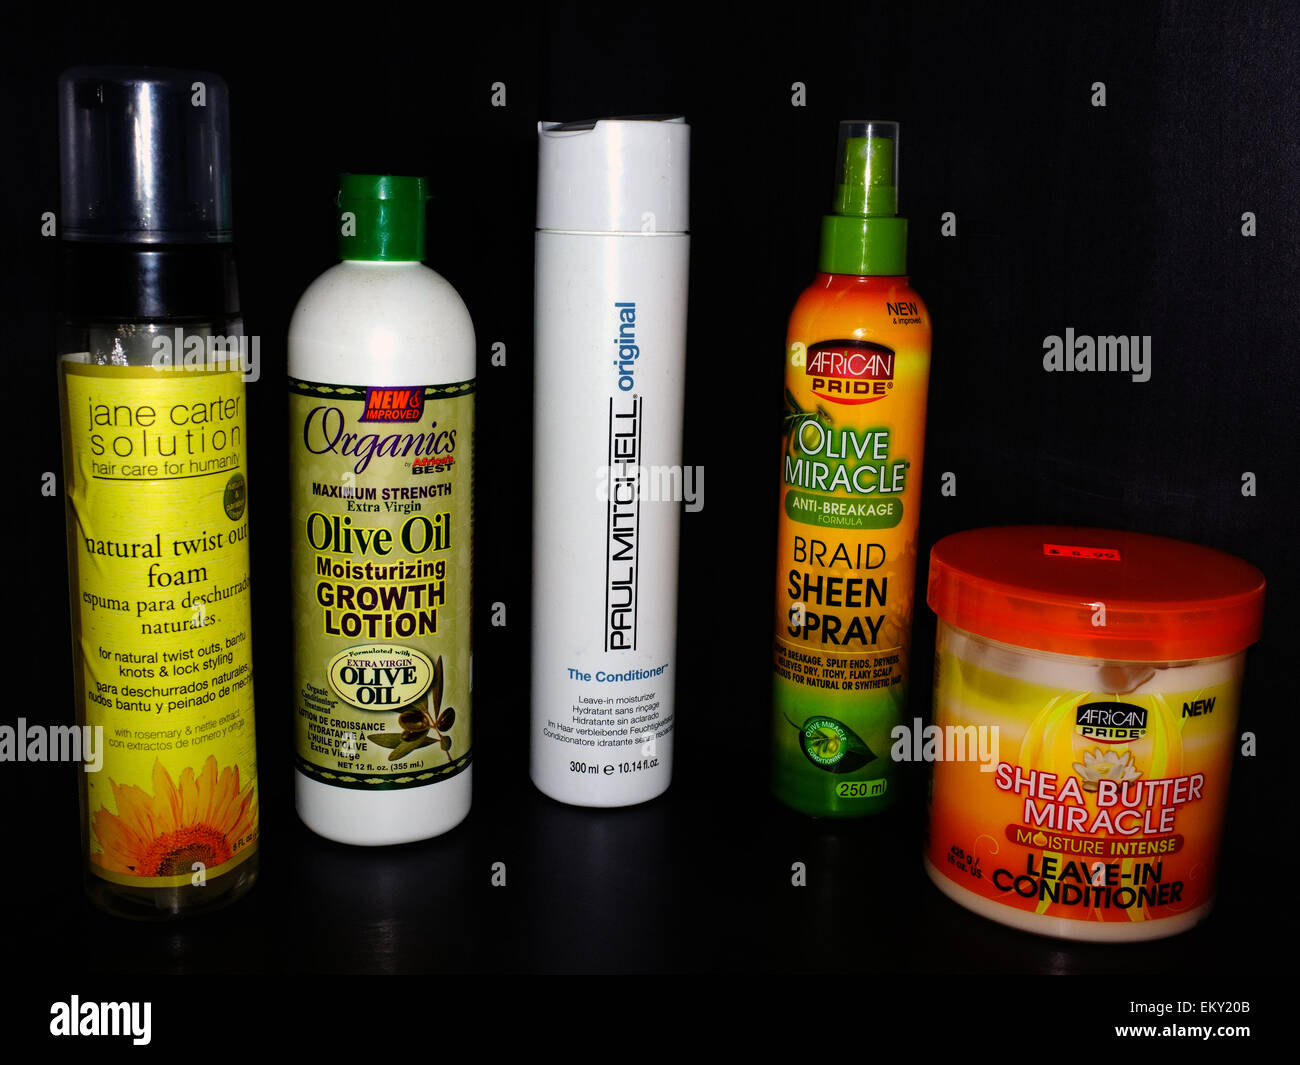 Diferentes productos de belleza y cabello natural utilizado comúnmente por la gente de color. Foto de stock